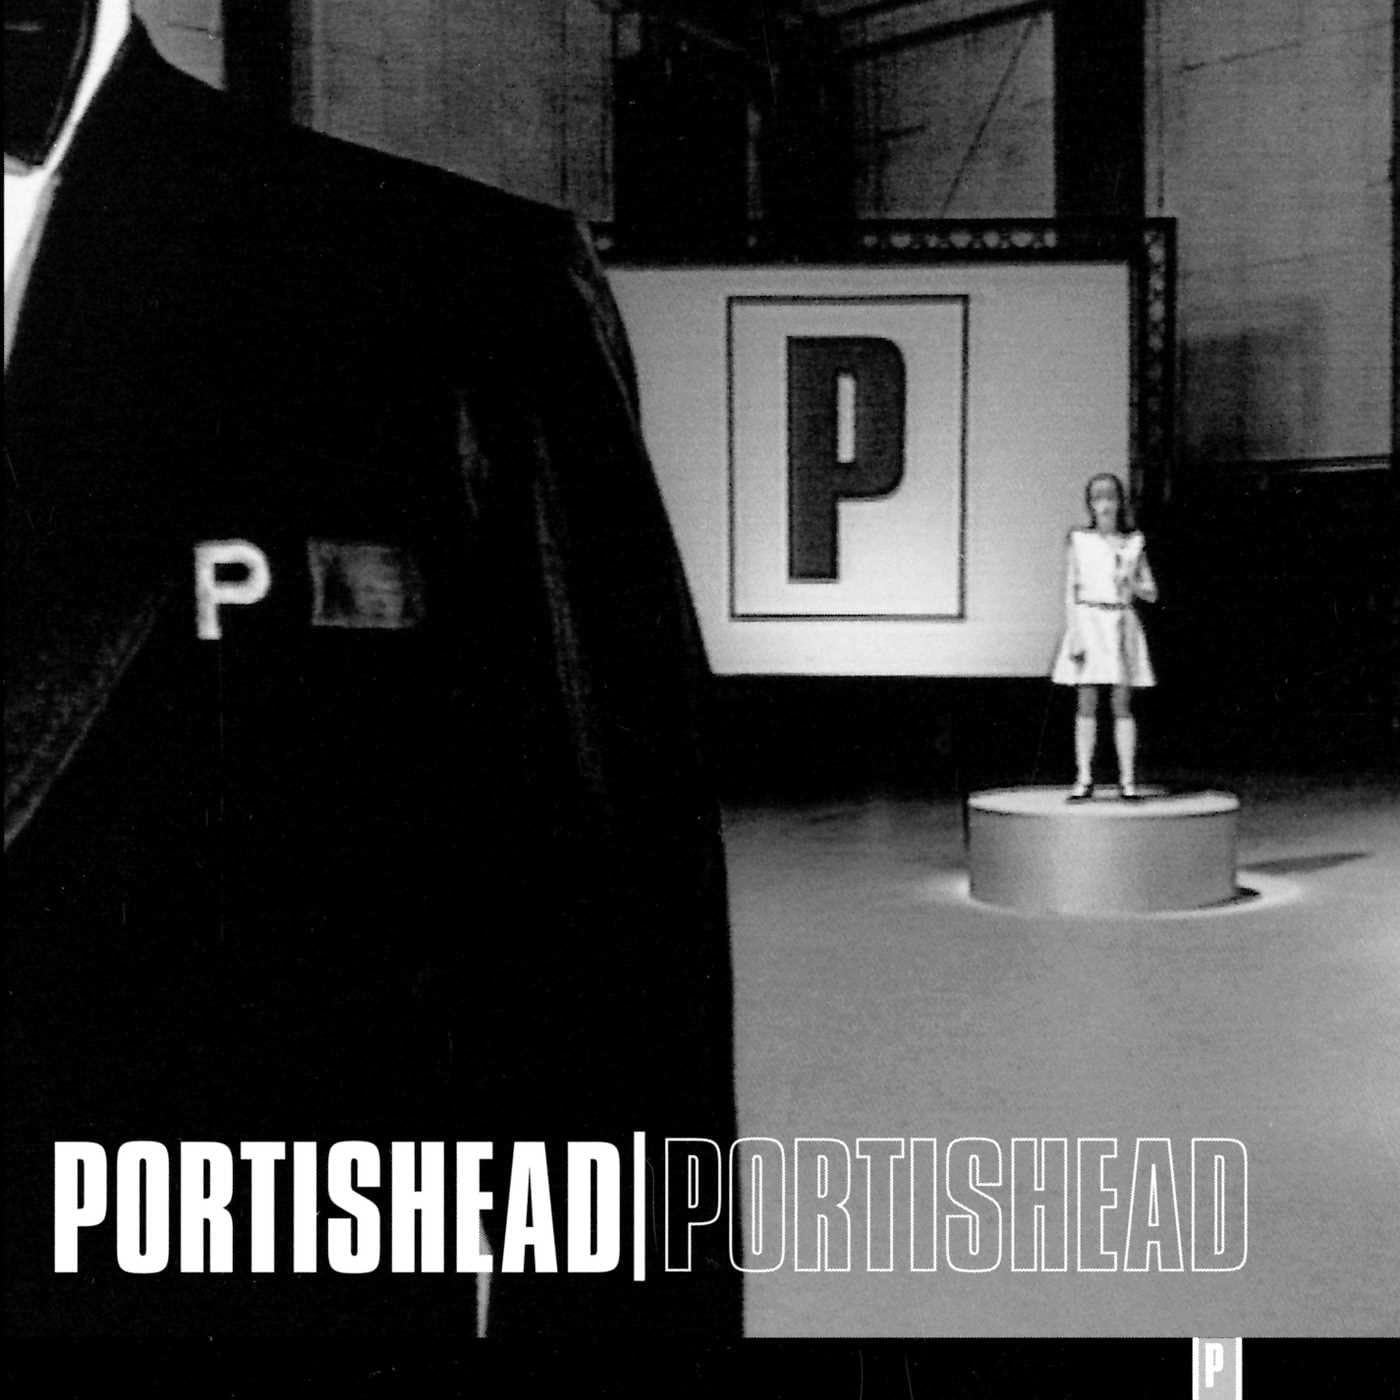 Portishead "Portishead" 2x12" 180g Vinyl